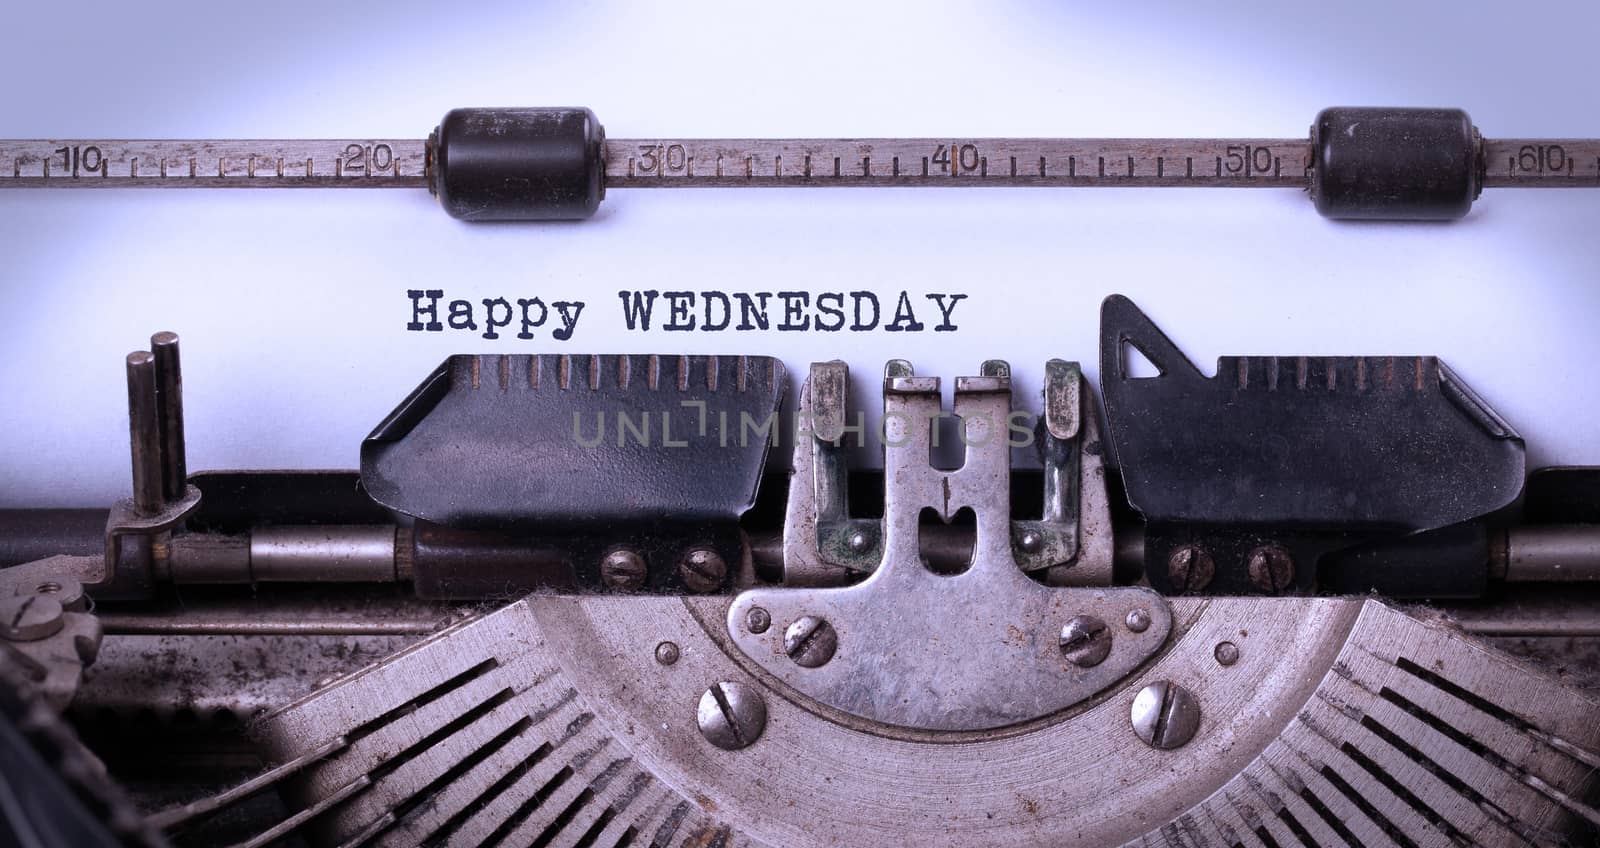 Vintage typewriter close-up - Happy Wednesday by michaklootwijk